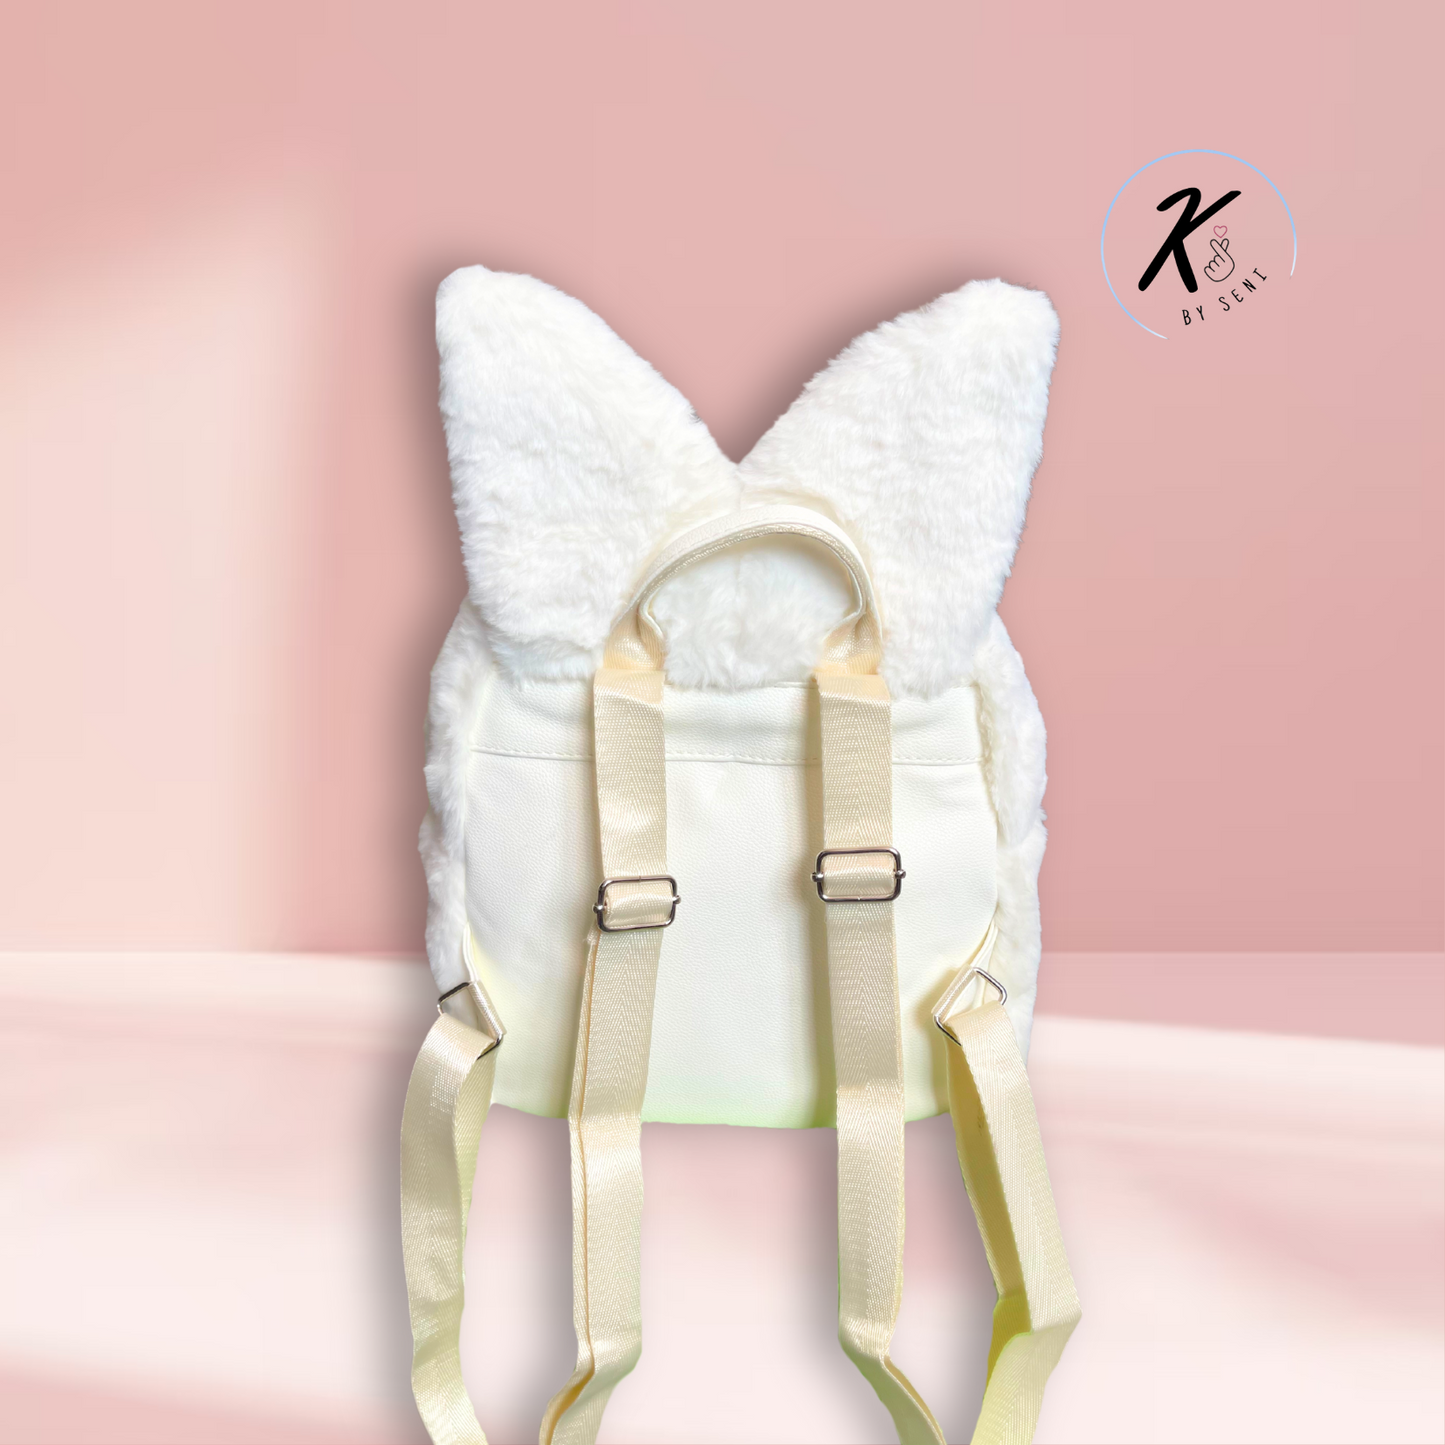 FoxI.Ny Skzoo-inspired Backpack